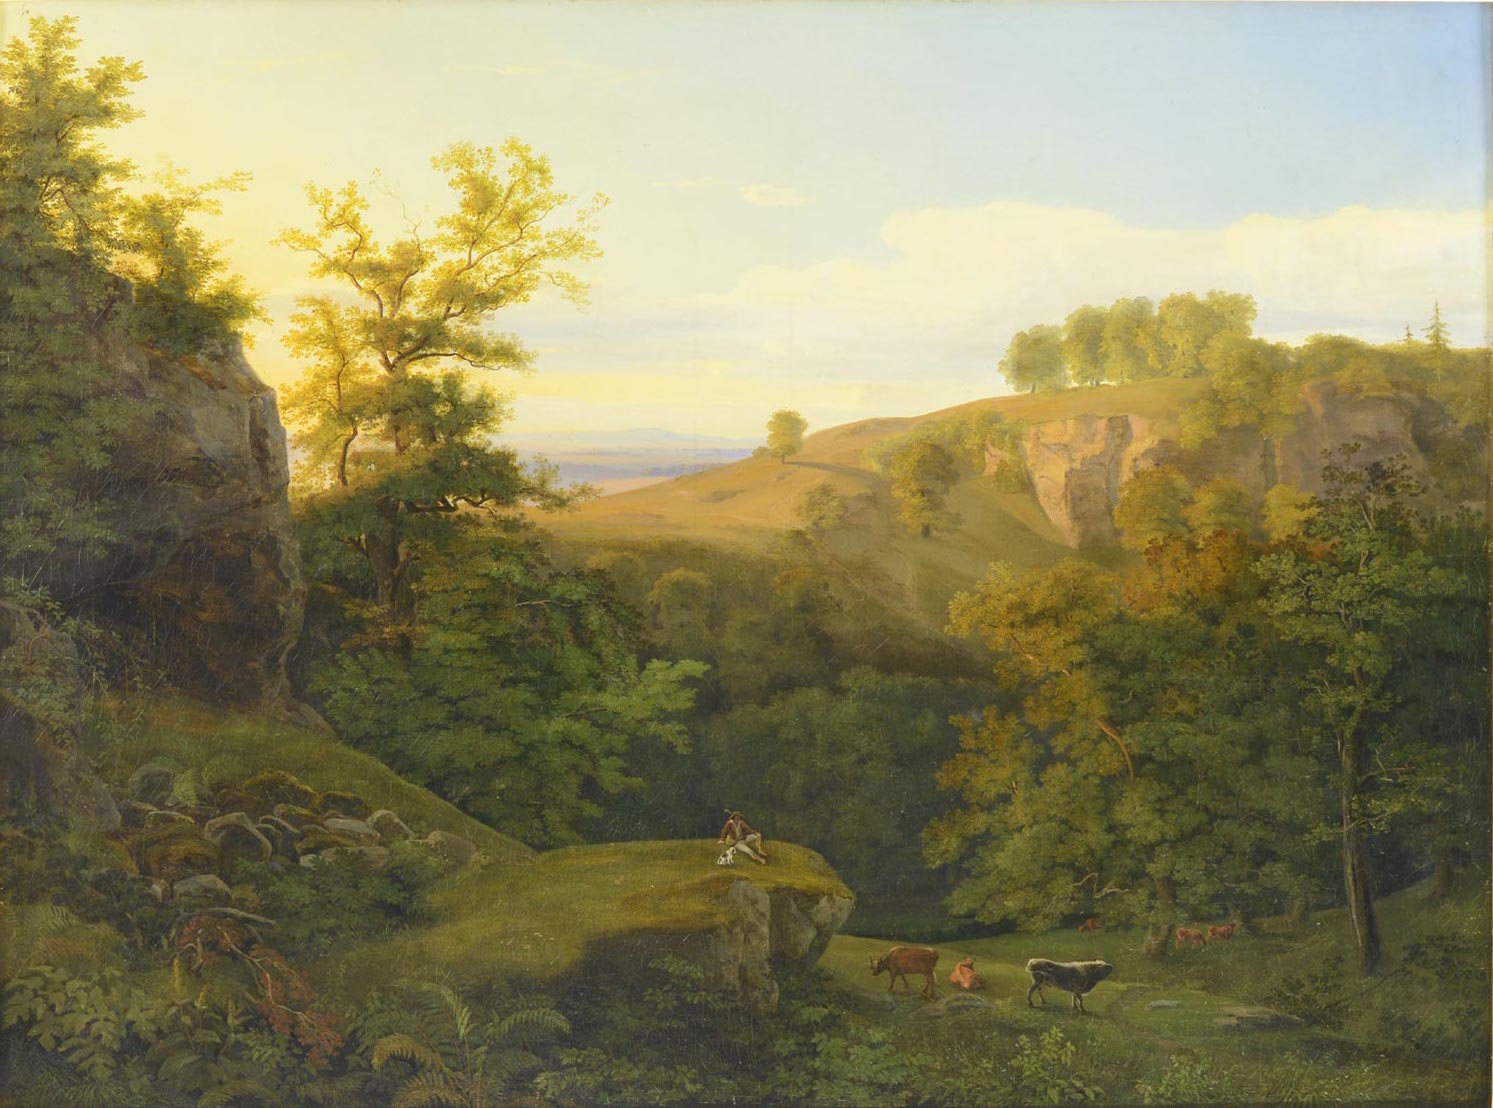 Antonín Mánes: Skalnatá krajina s pasáčkem dobytka, 1820-1829 olej na plátně, 74 cm x 99 cm vyvolávací cena: 750 000 Kč (bez provize 18%)